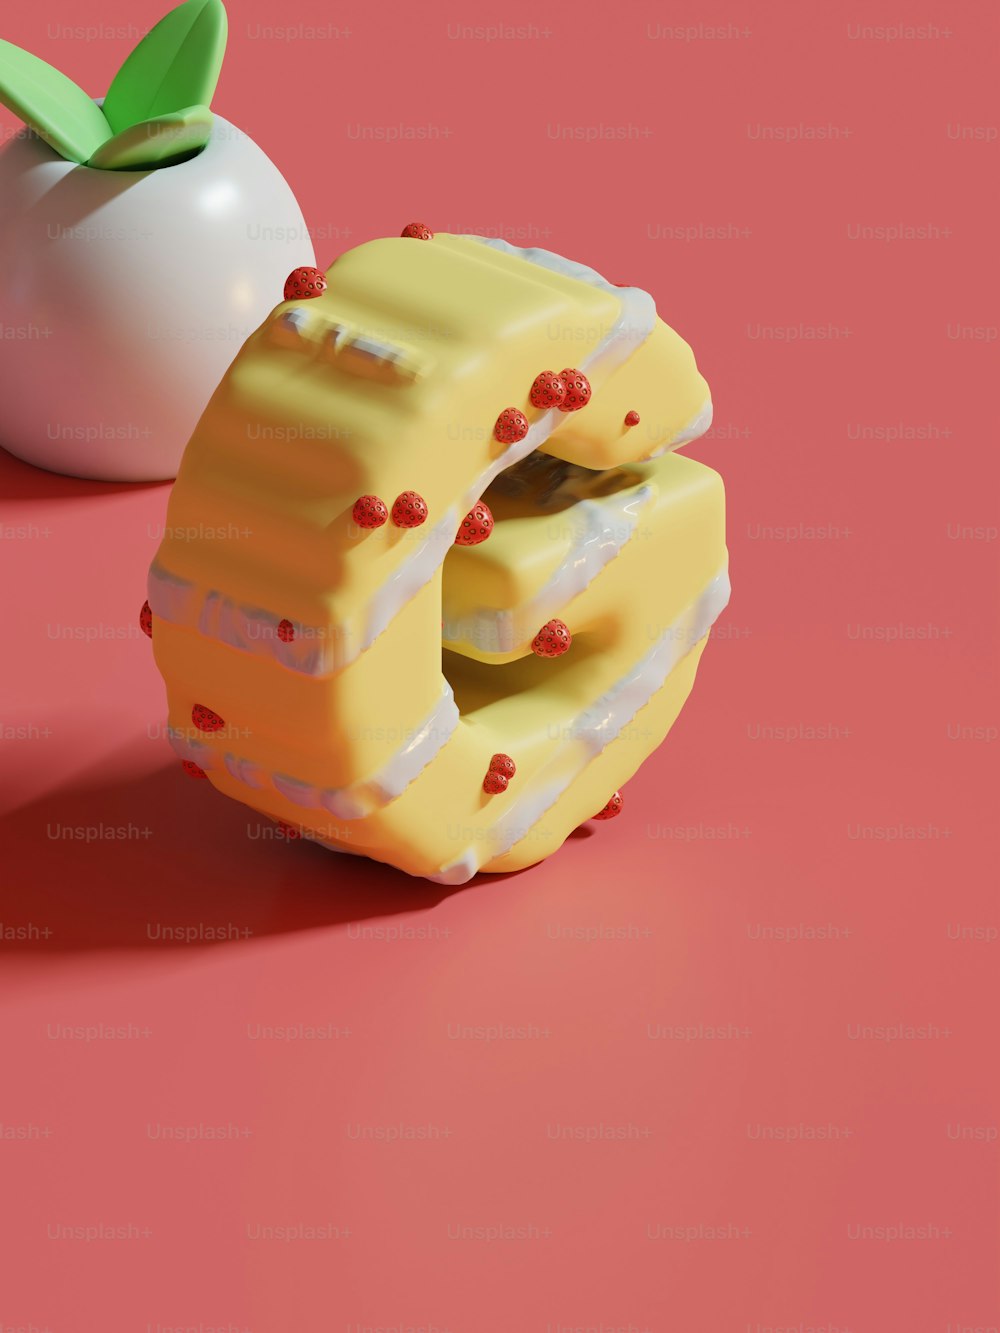 Un pedazo de pastel junto a una manzana sobre una superficie rosada